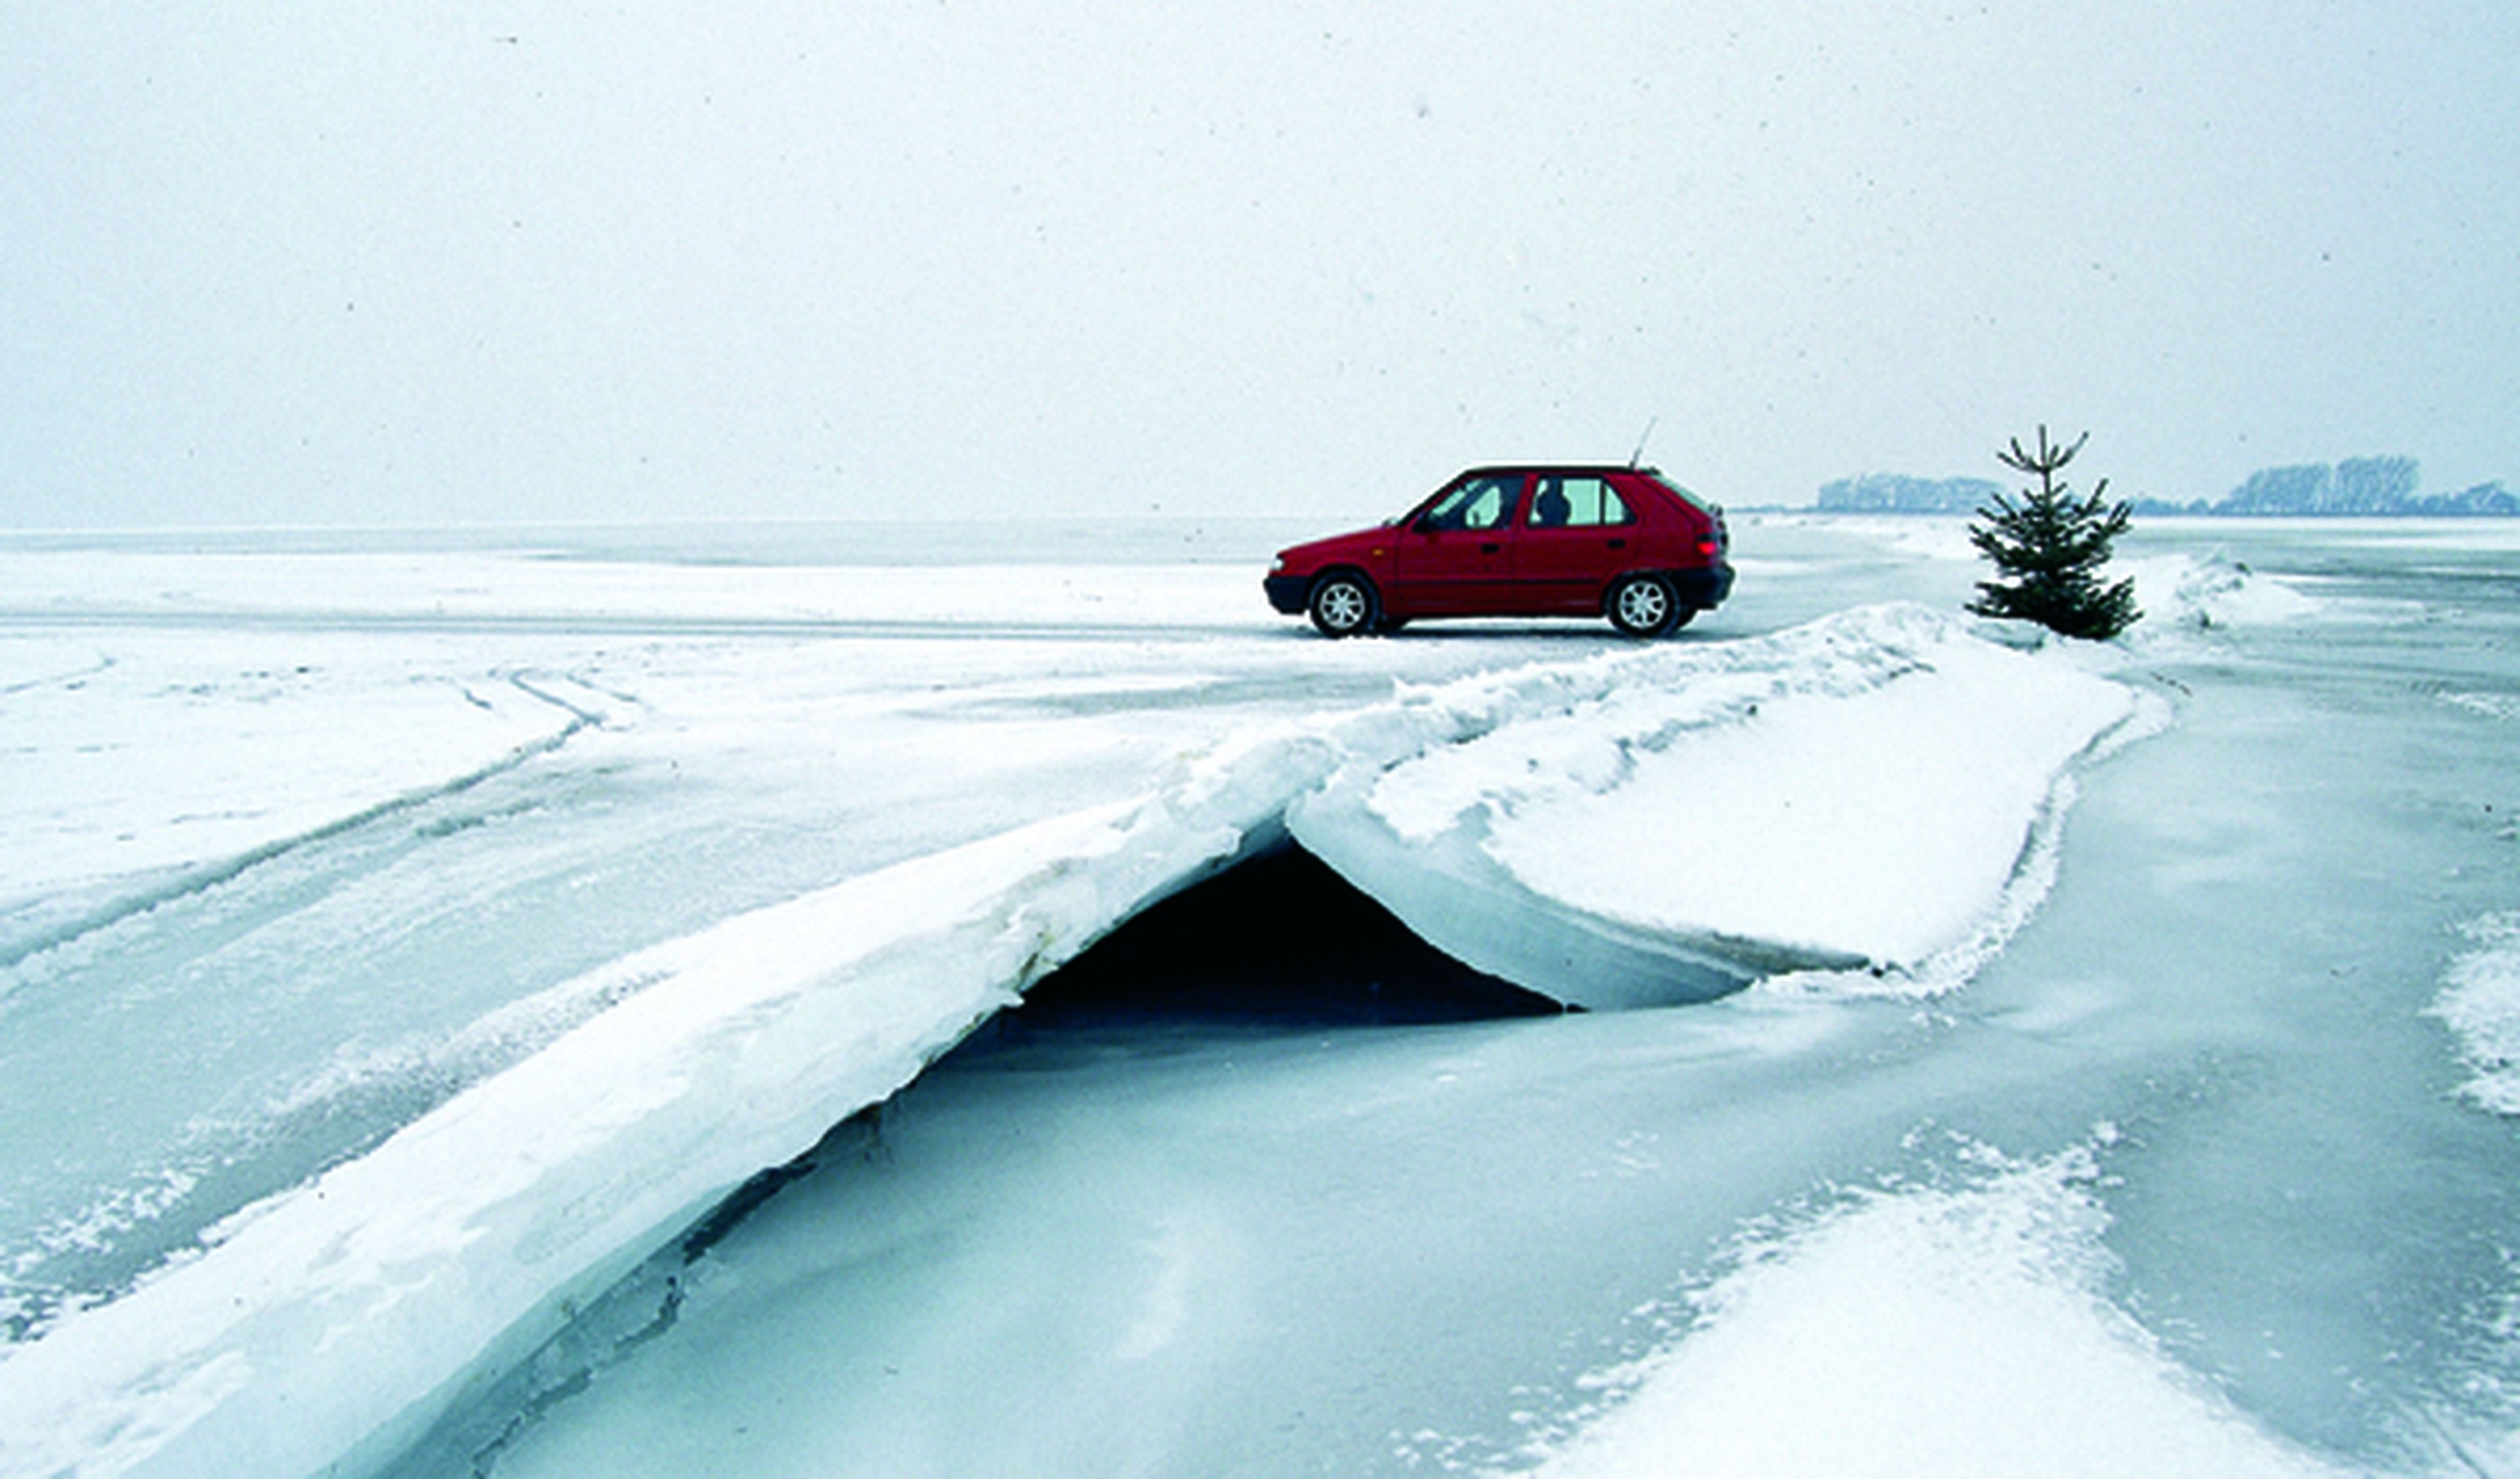 Nieve, barro, baches... los peligros de la carretera (II)